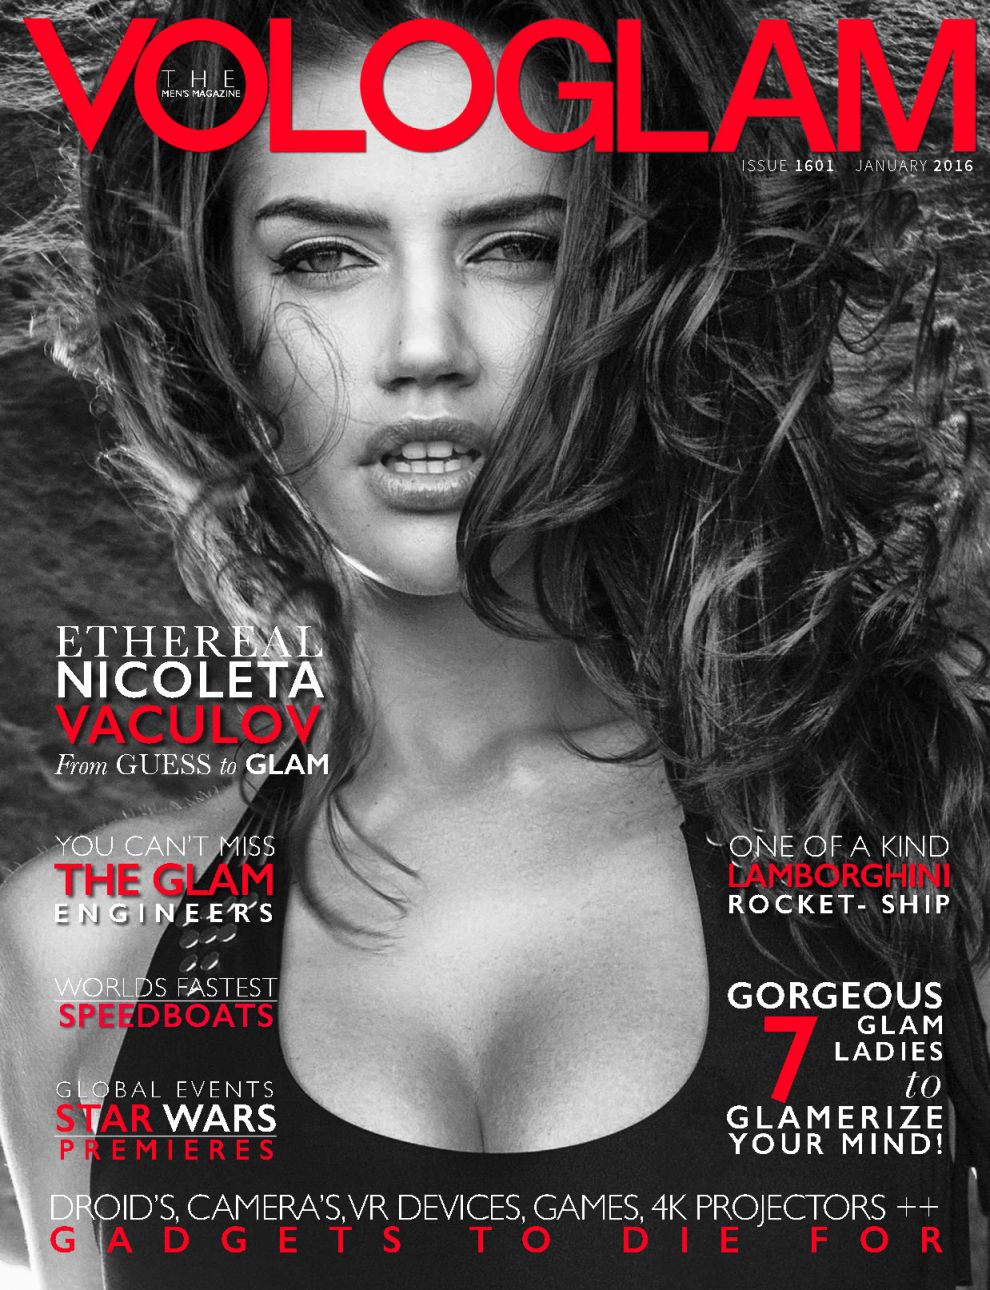 Nicoleta Vaculov looking sexy for Vologlam Magazine